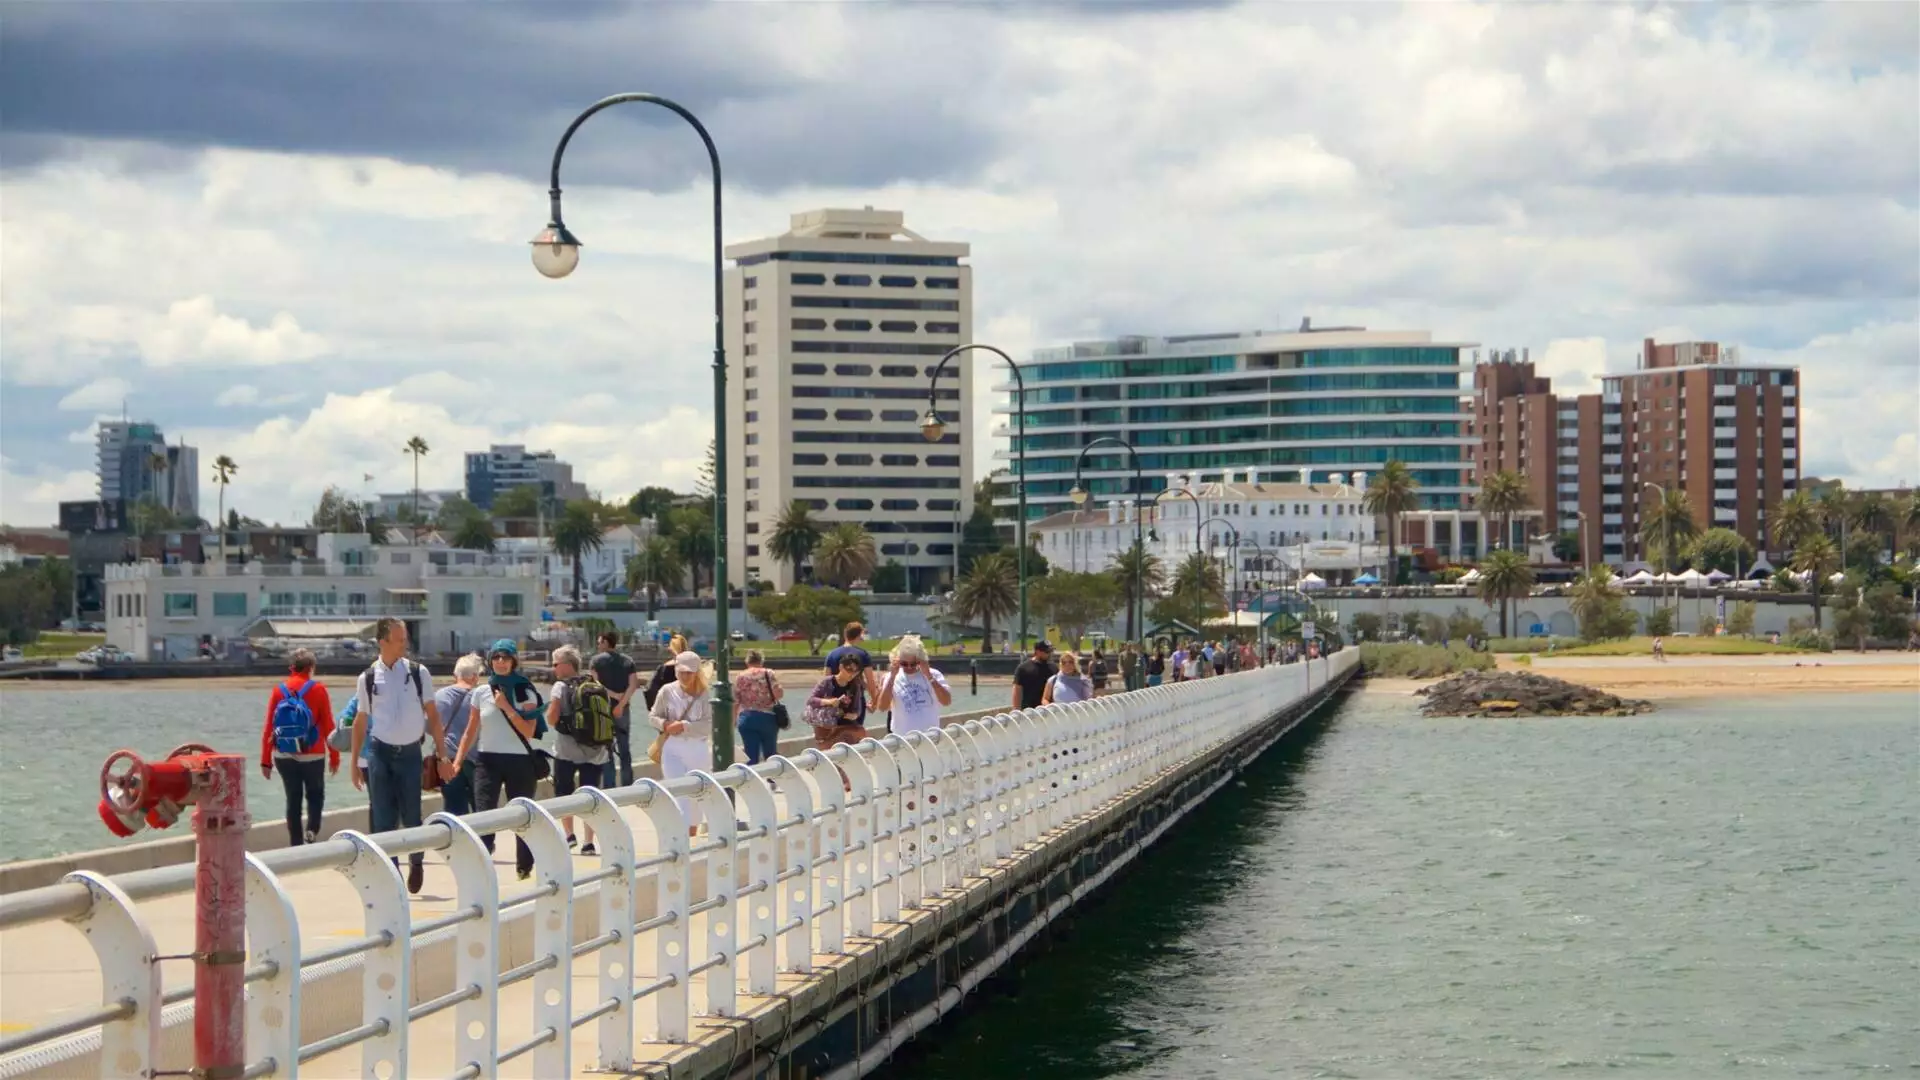 St Kilda Pier On Melbourne In Australia